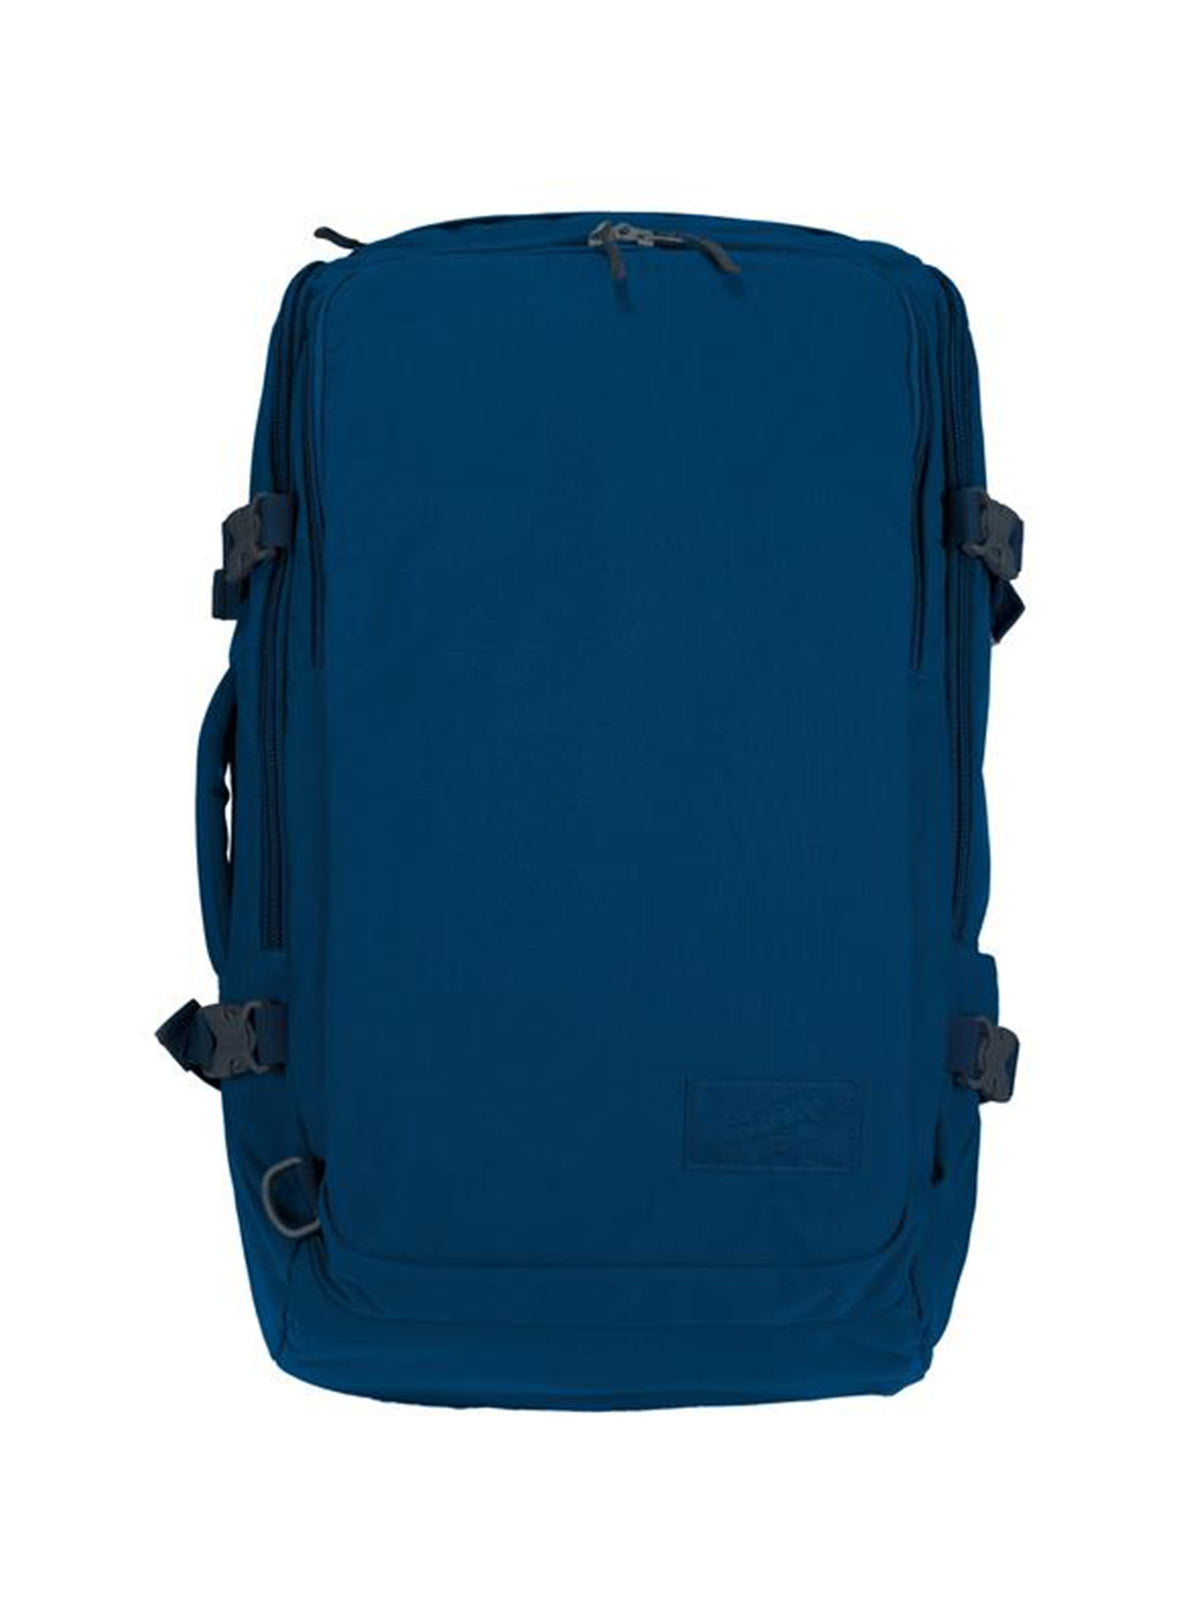 Cabinzero Adventure Pro Cabin Bag 42L in Atlantic Blue Color